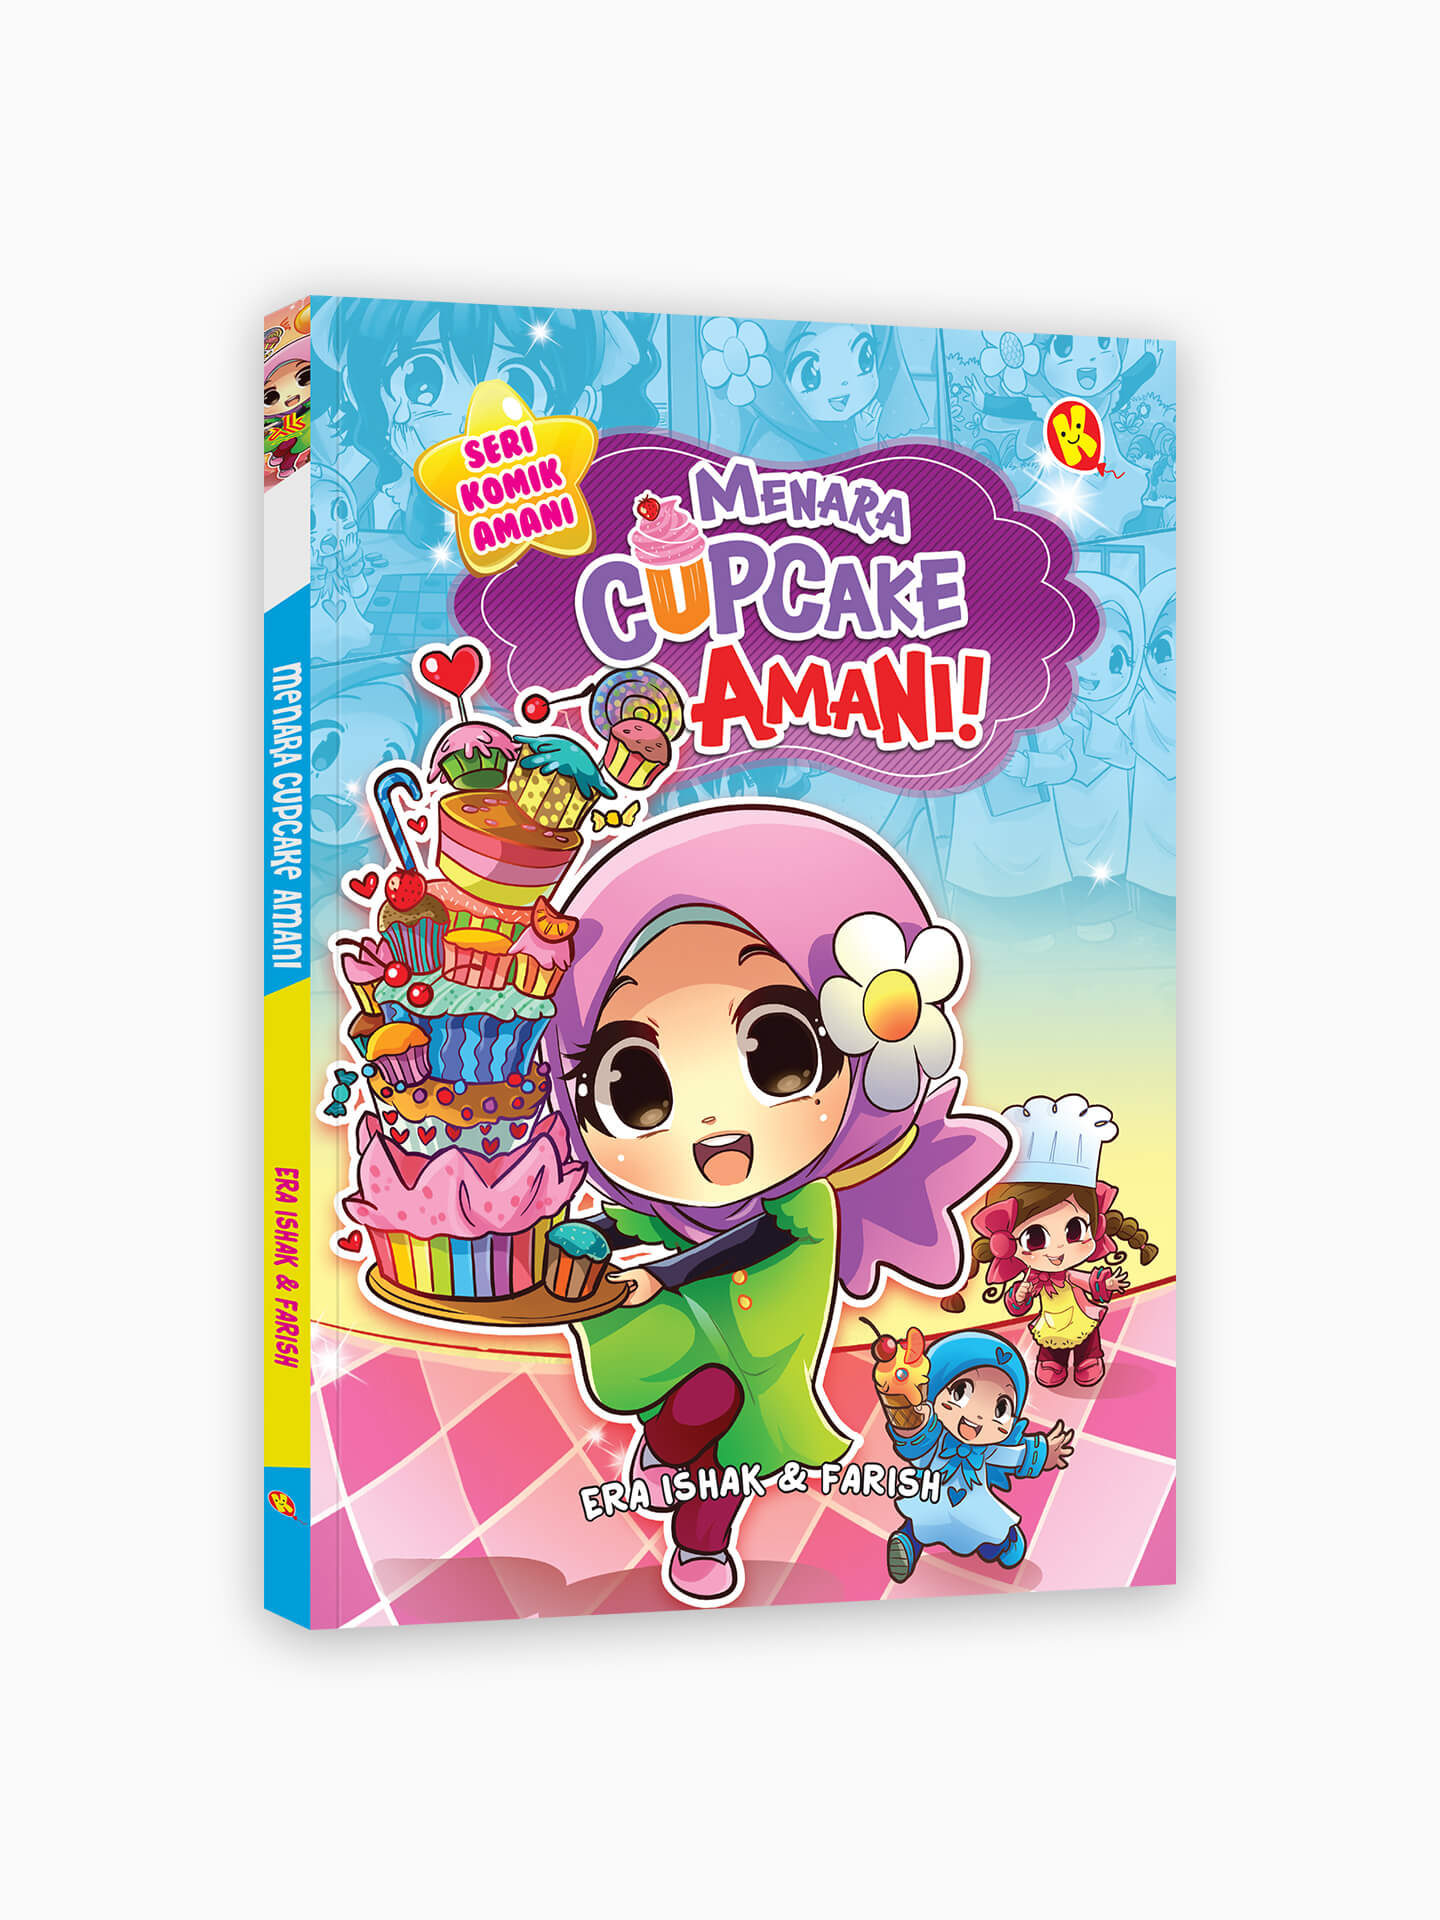 Menara Cupcake Amani!